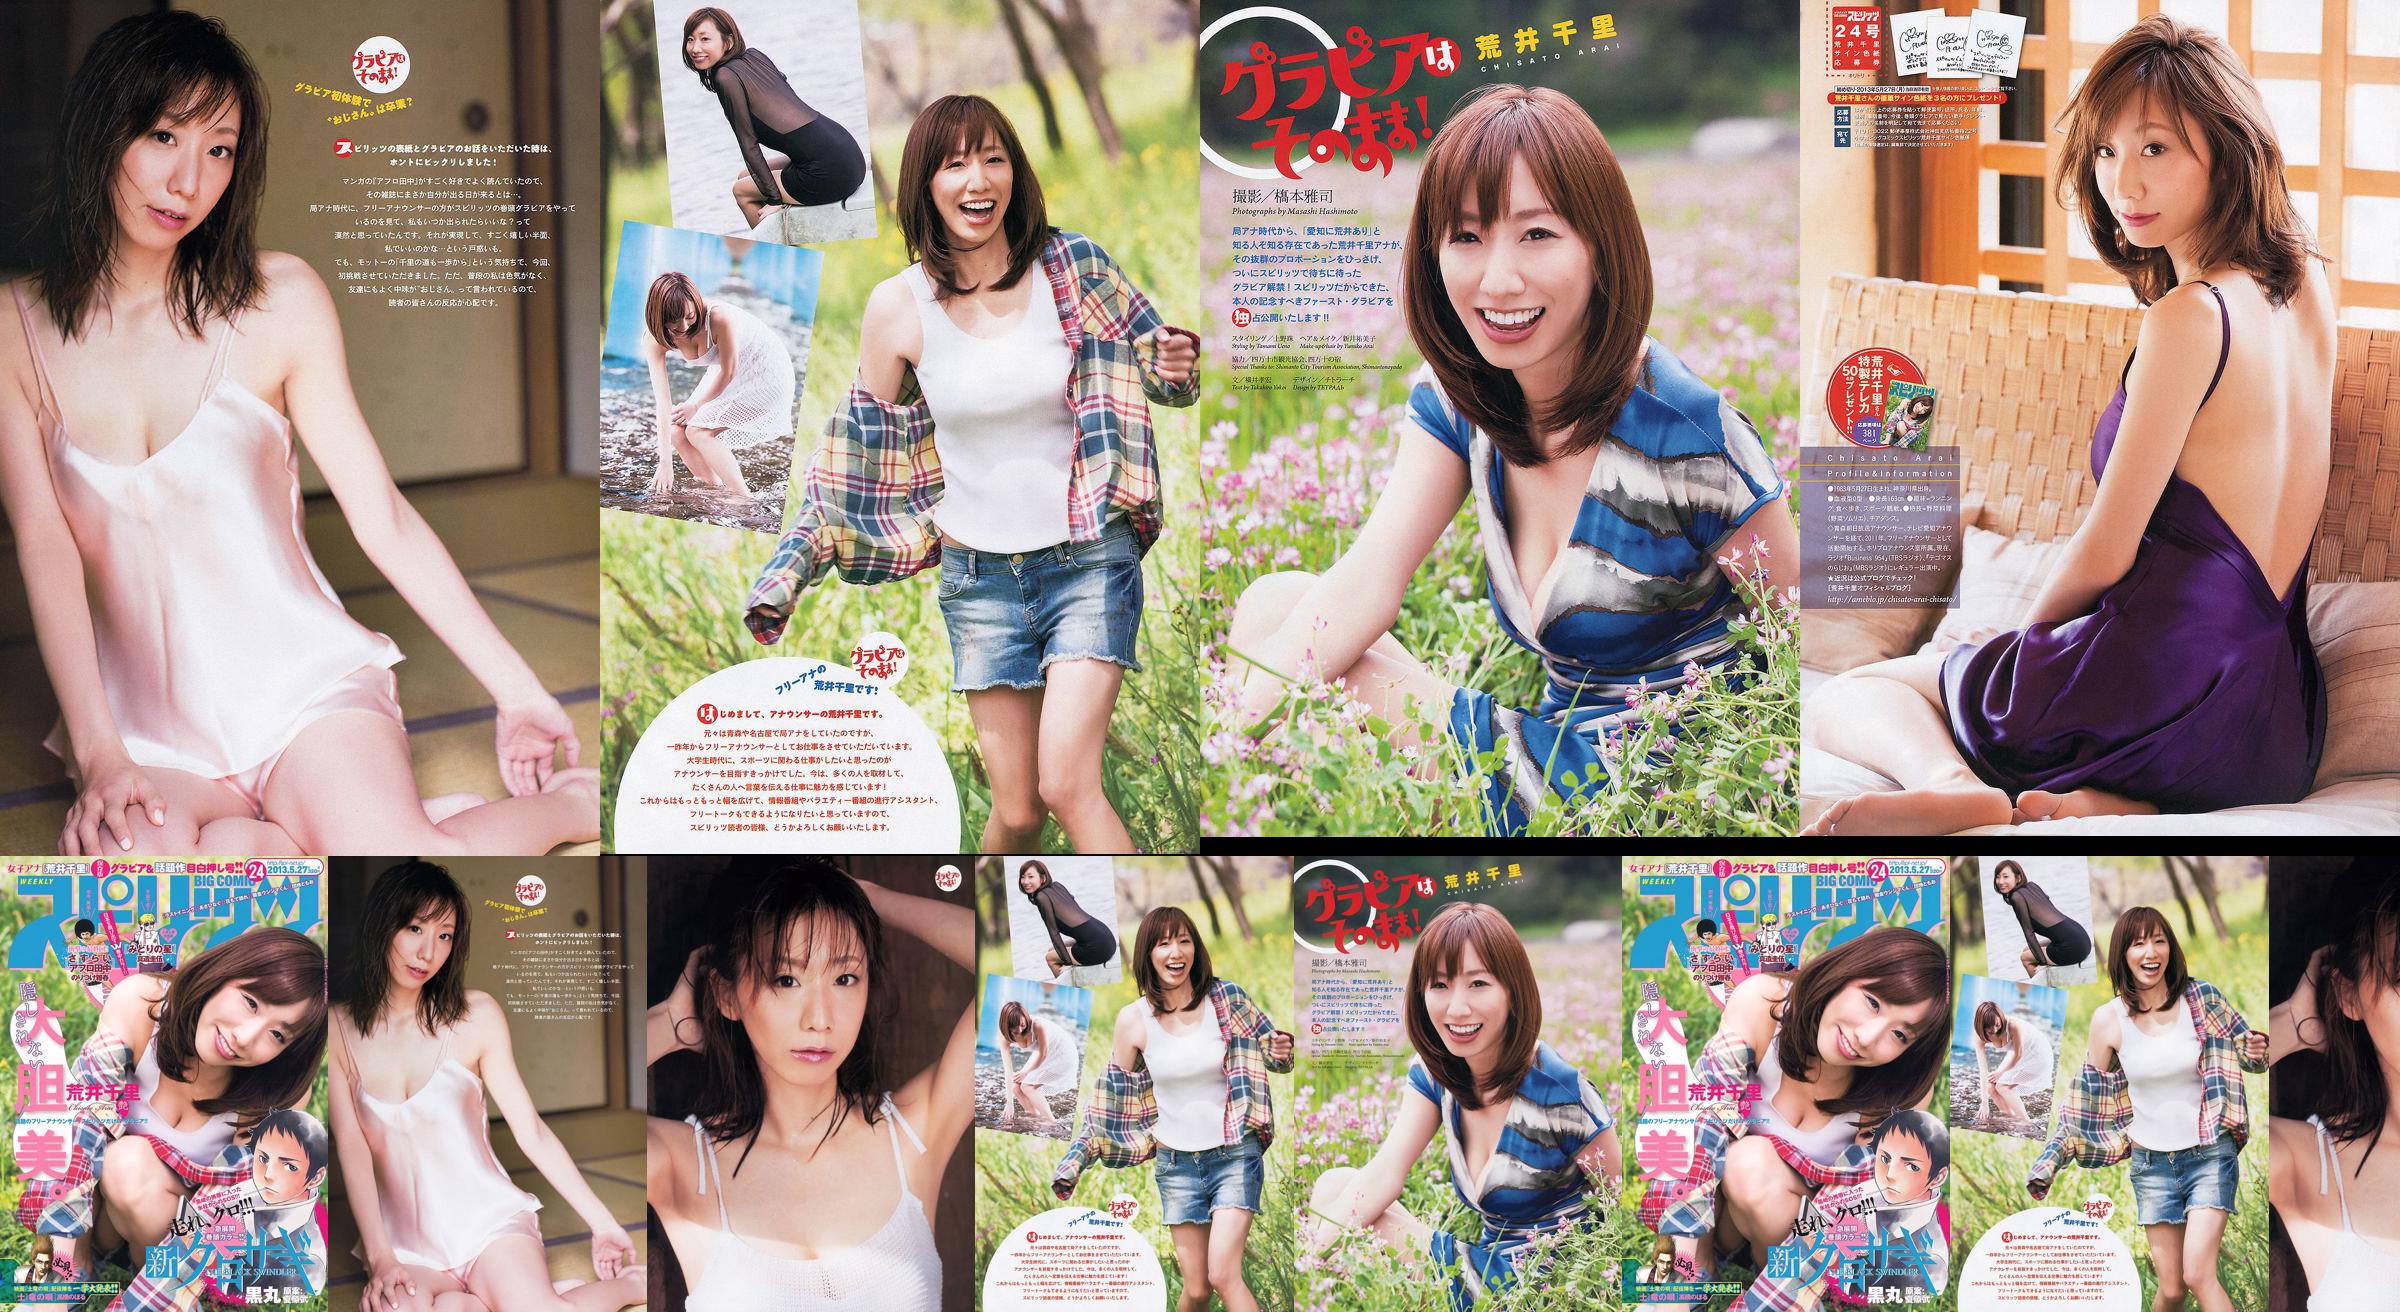 [Semangat Komik Besar Mingguan] Chisato Arai 2013 Majalah Foto No.24 No.126e2a Halaman 1